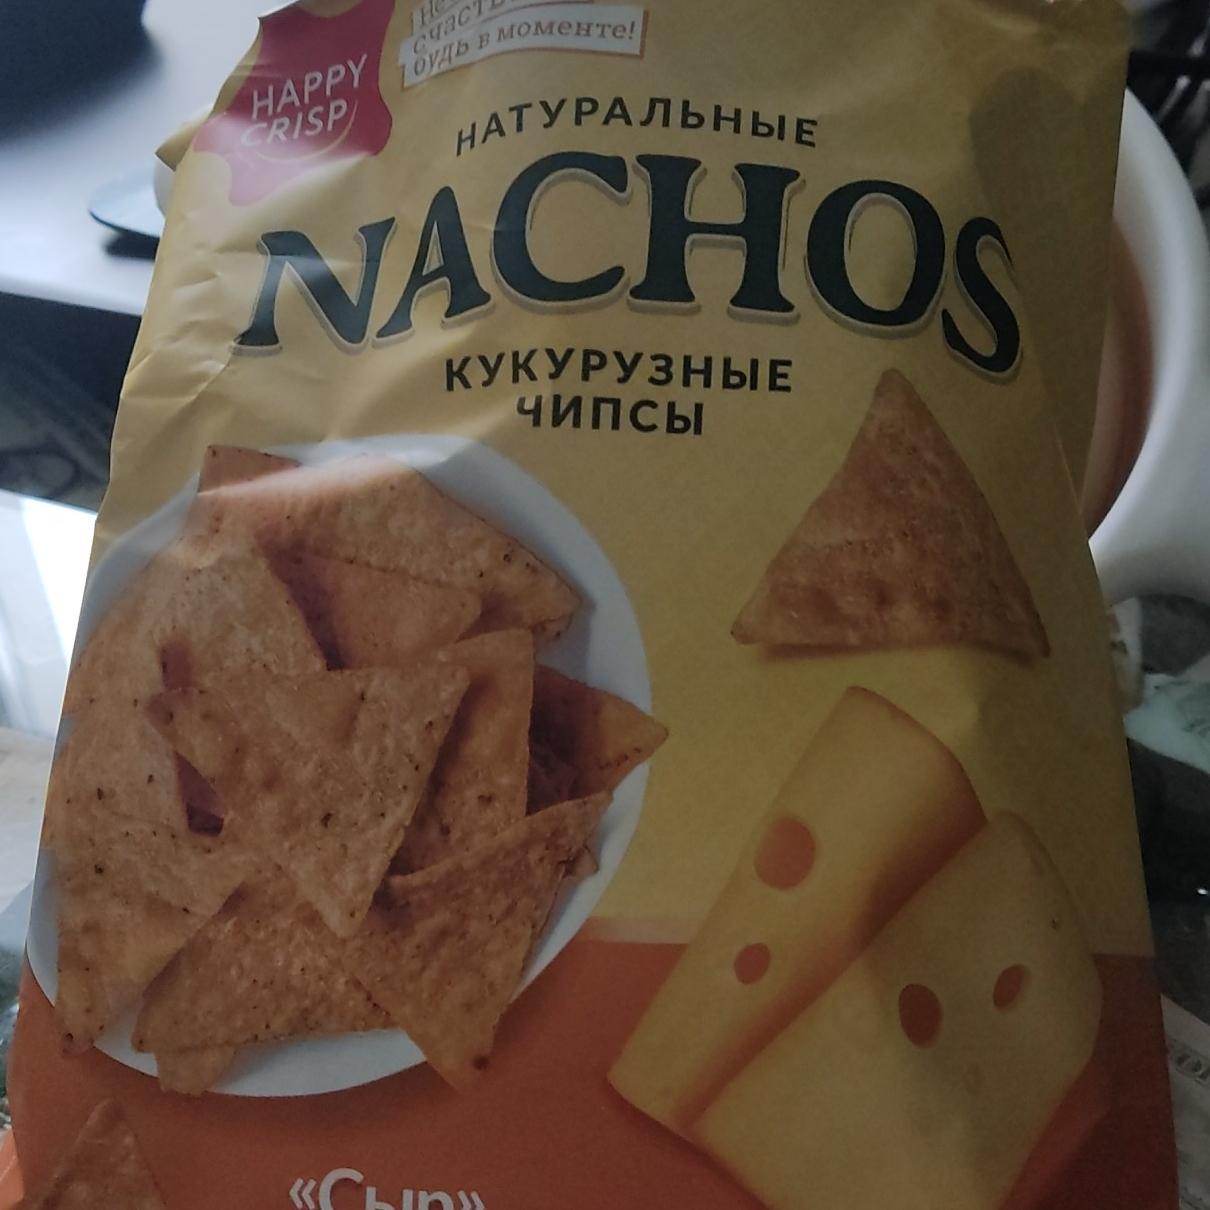 Фото - Кукурузные чипсы натуральные Nachos Happy Crisp